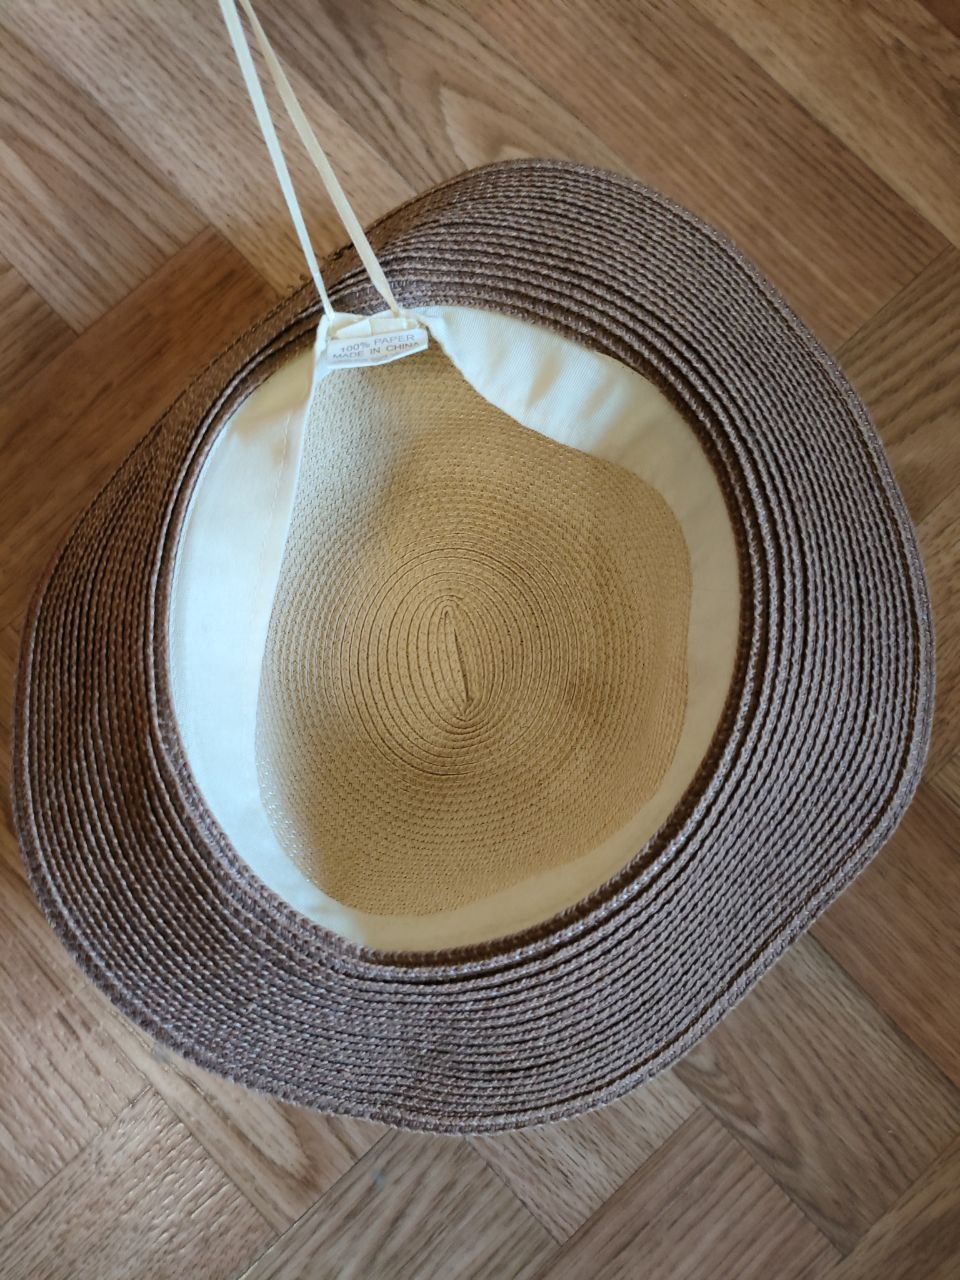 Літній капелюх/ панама з бамбукової соломи, 55см